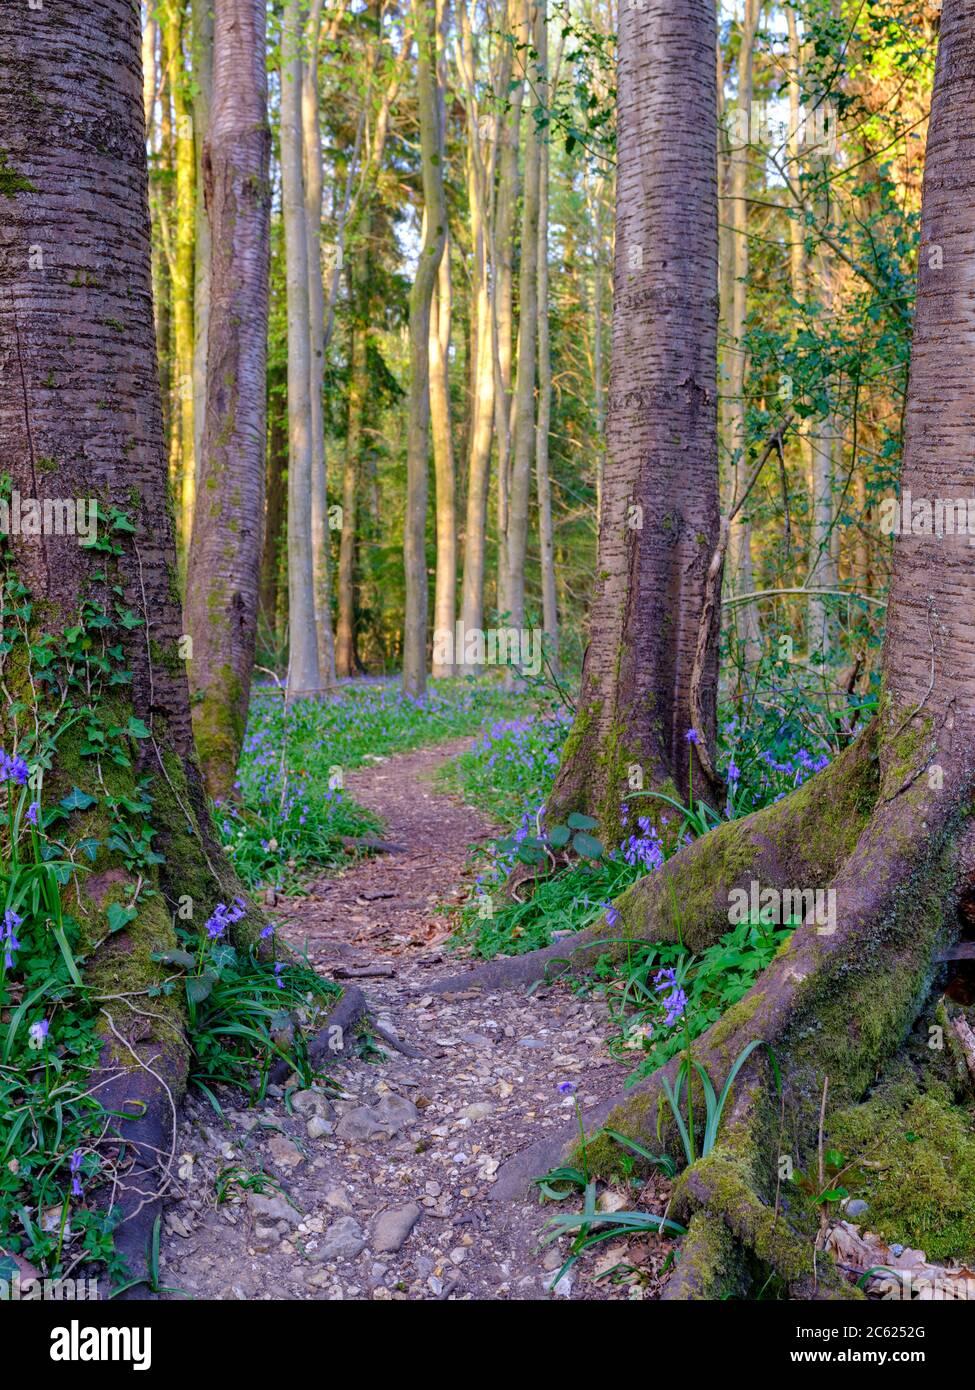 Wickham, UK - April 11, 2020:  Bluebells in the woods - Hundred Acre wood near Wickham, Hampshire, UK Stock Photo